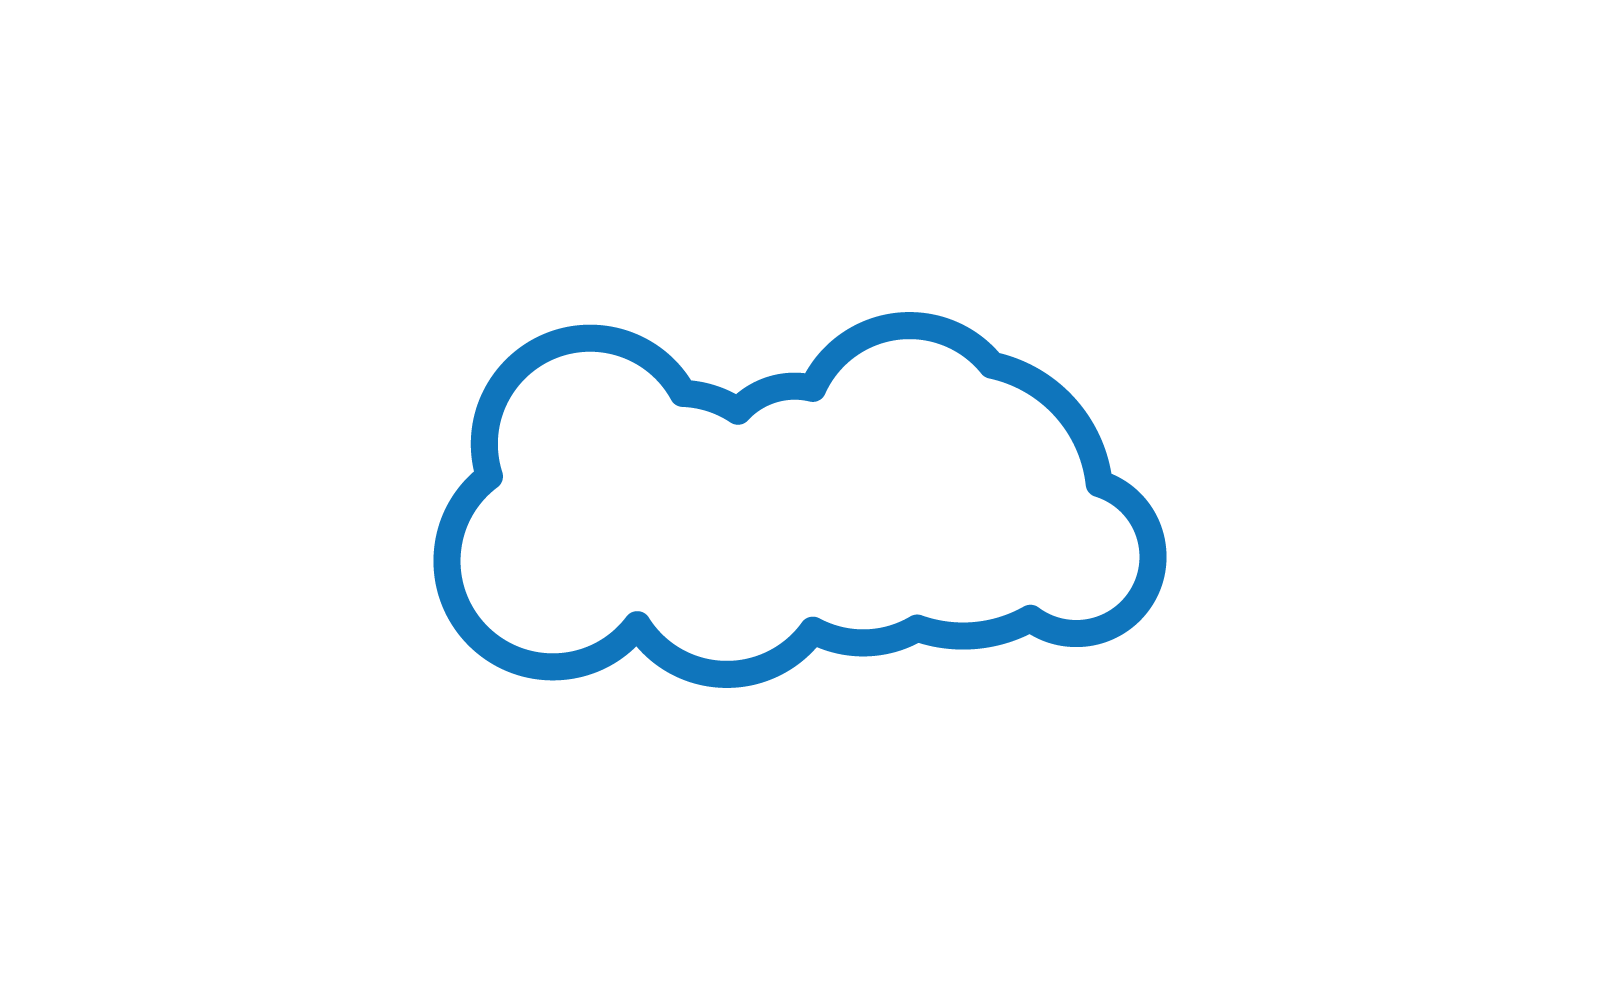 Modello vettoriale per l'illustrazione del logo della nuvola